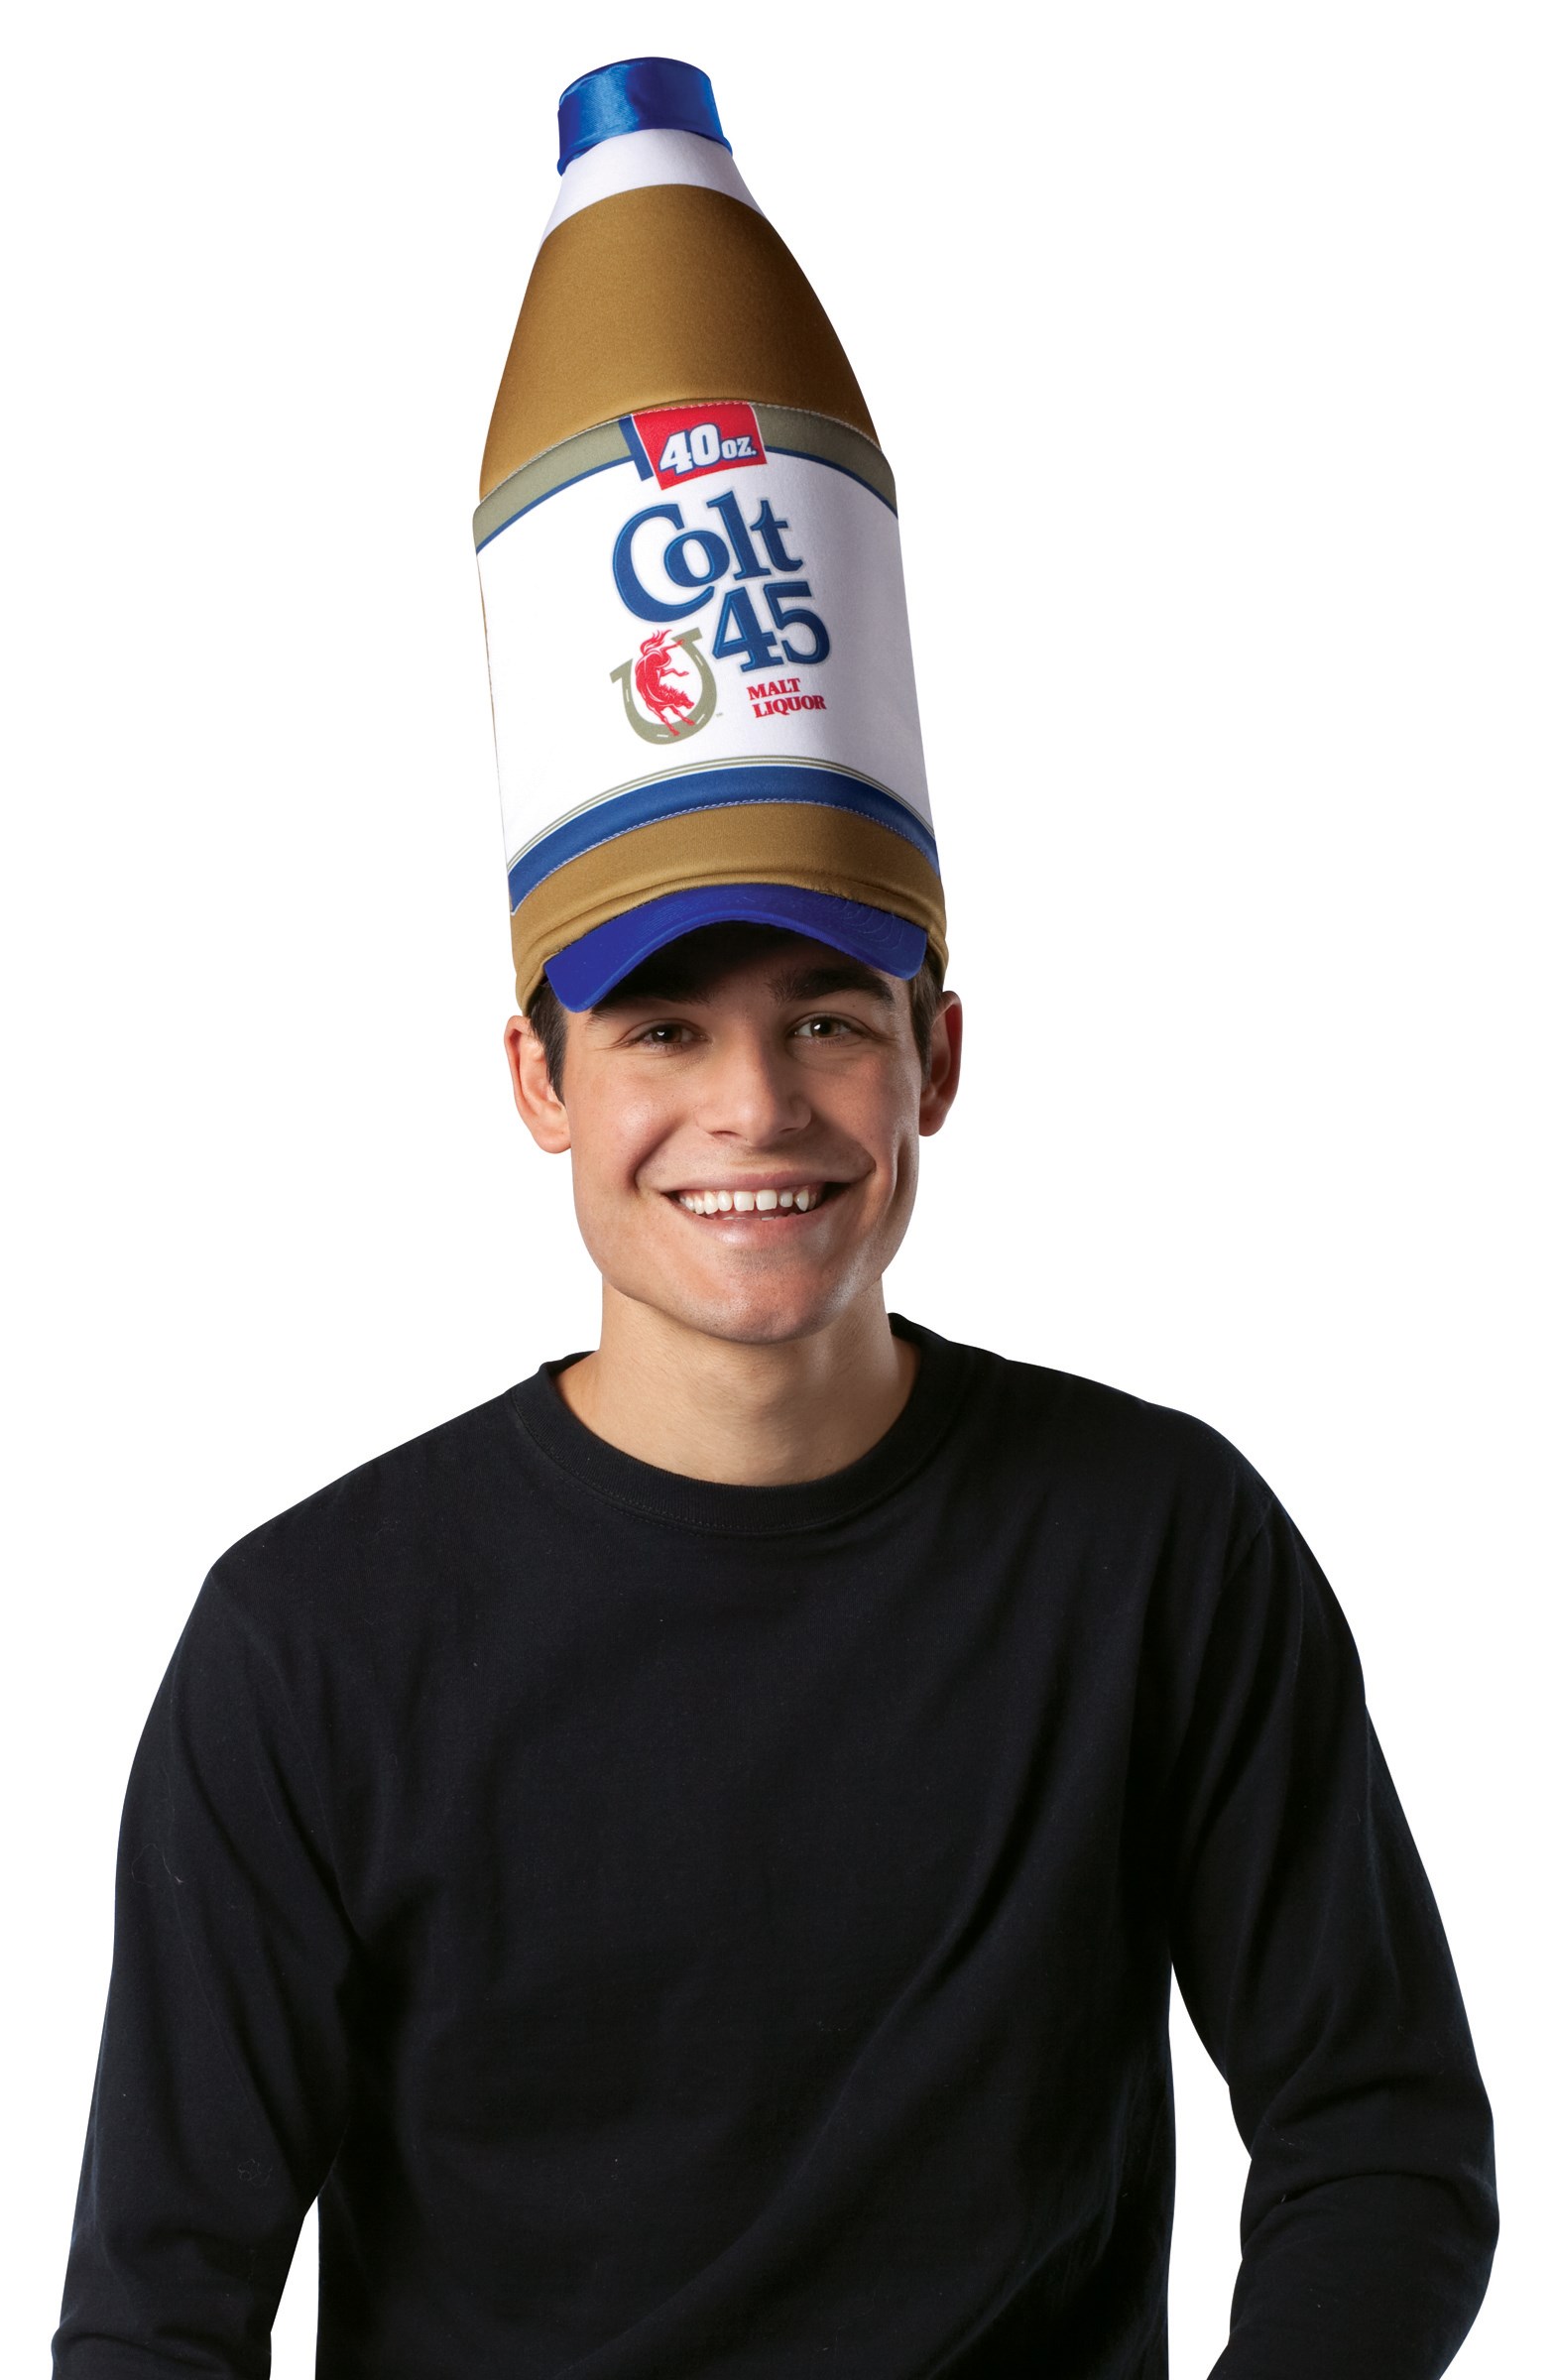 Colt 45 40-Oz. Bottle Hat (Adult) - One Size Fits Most Adults